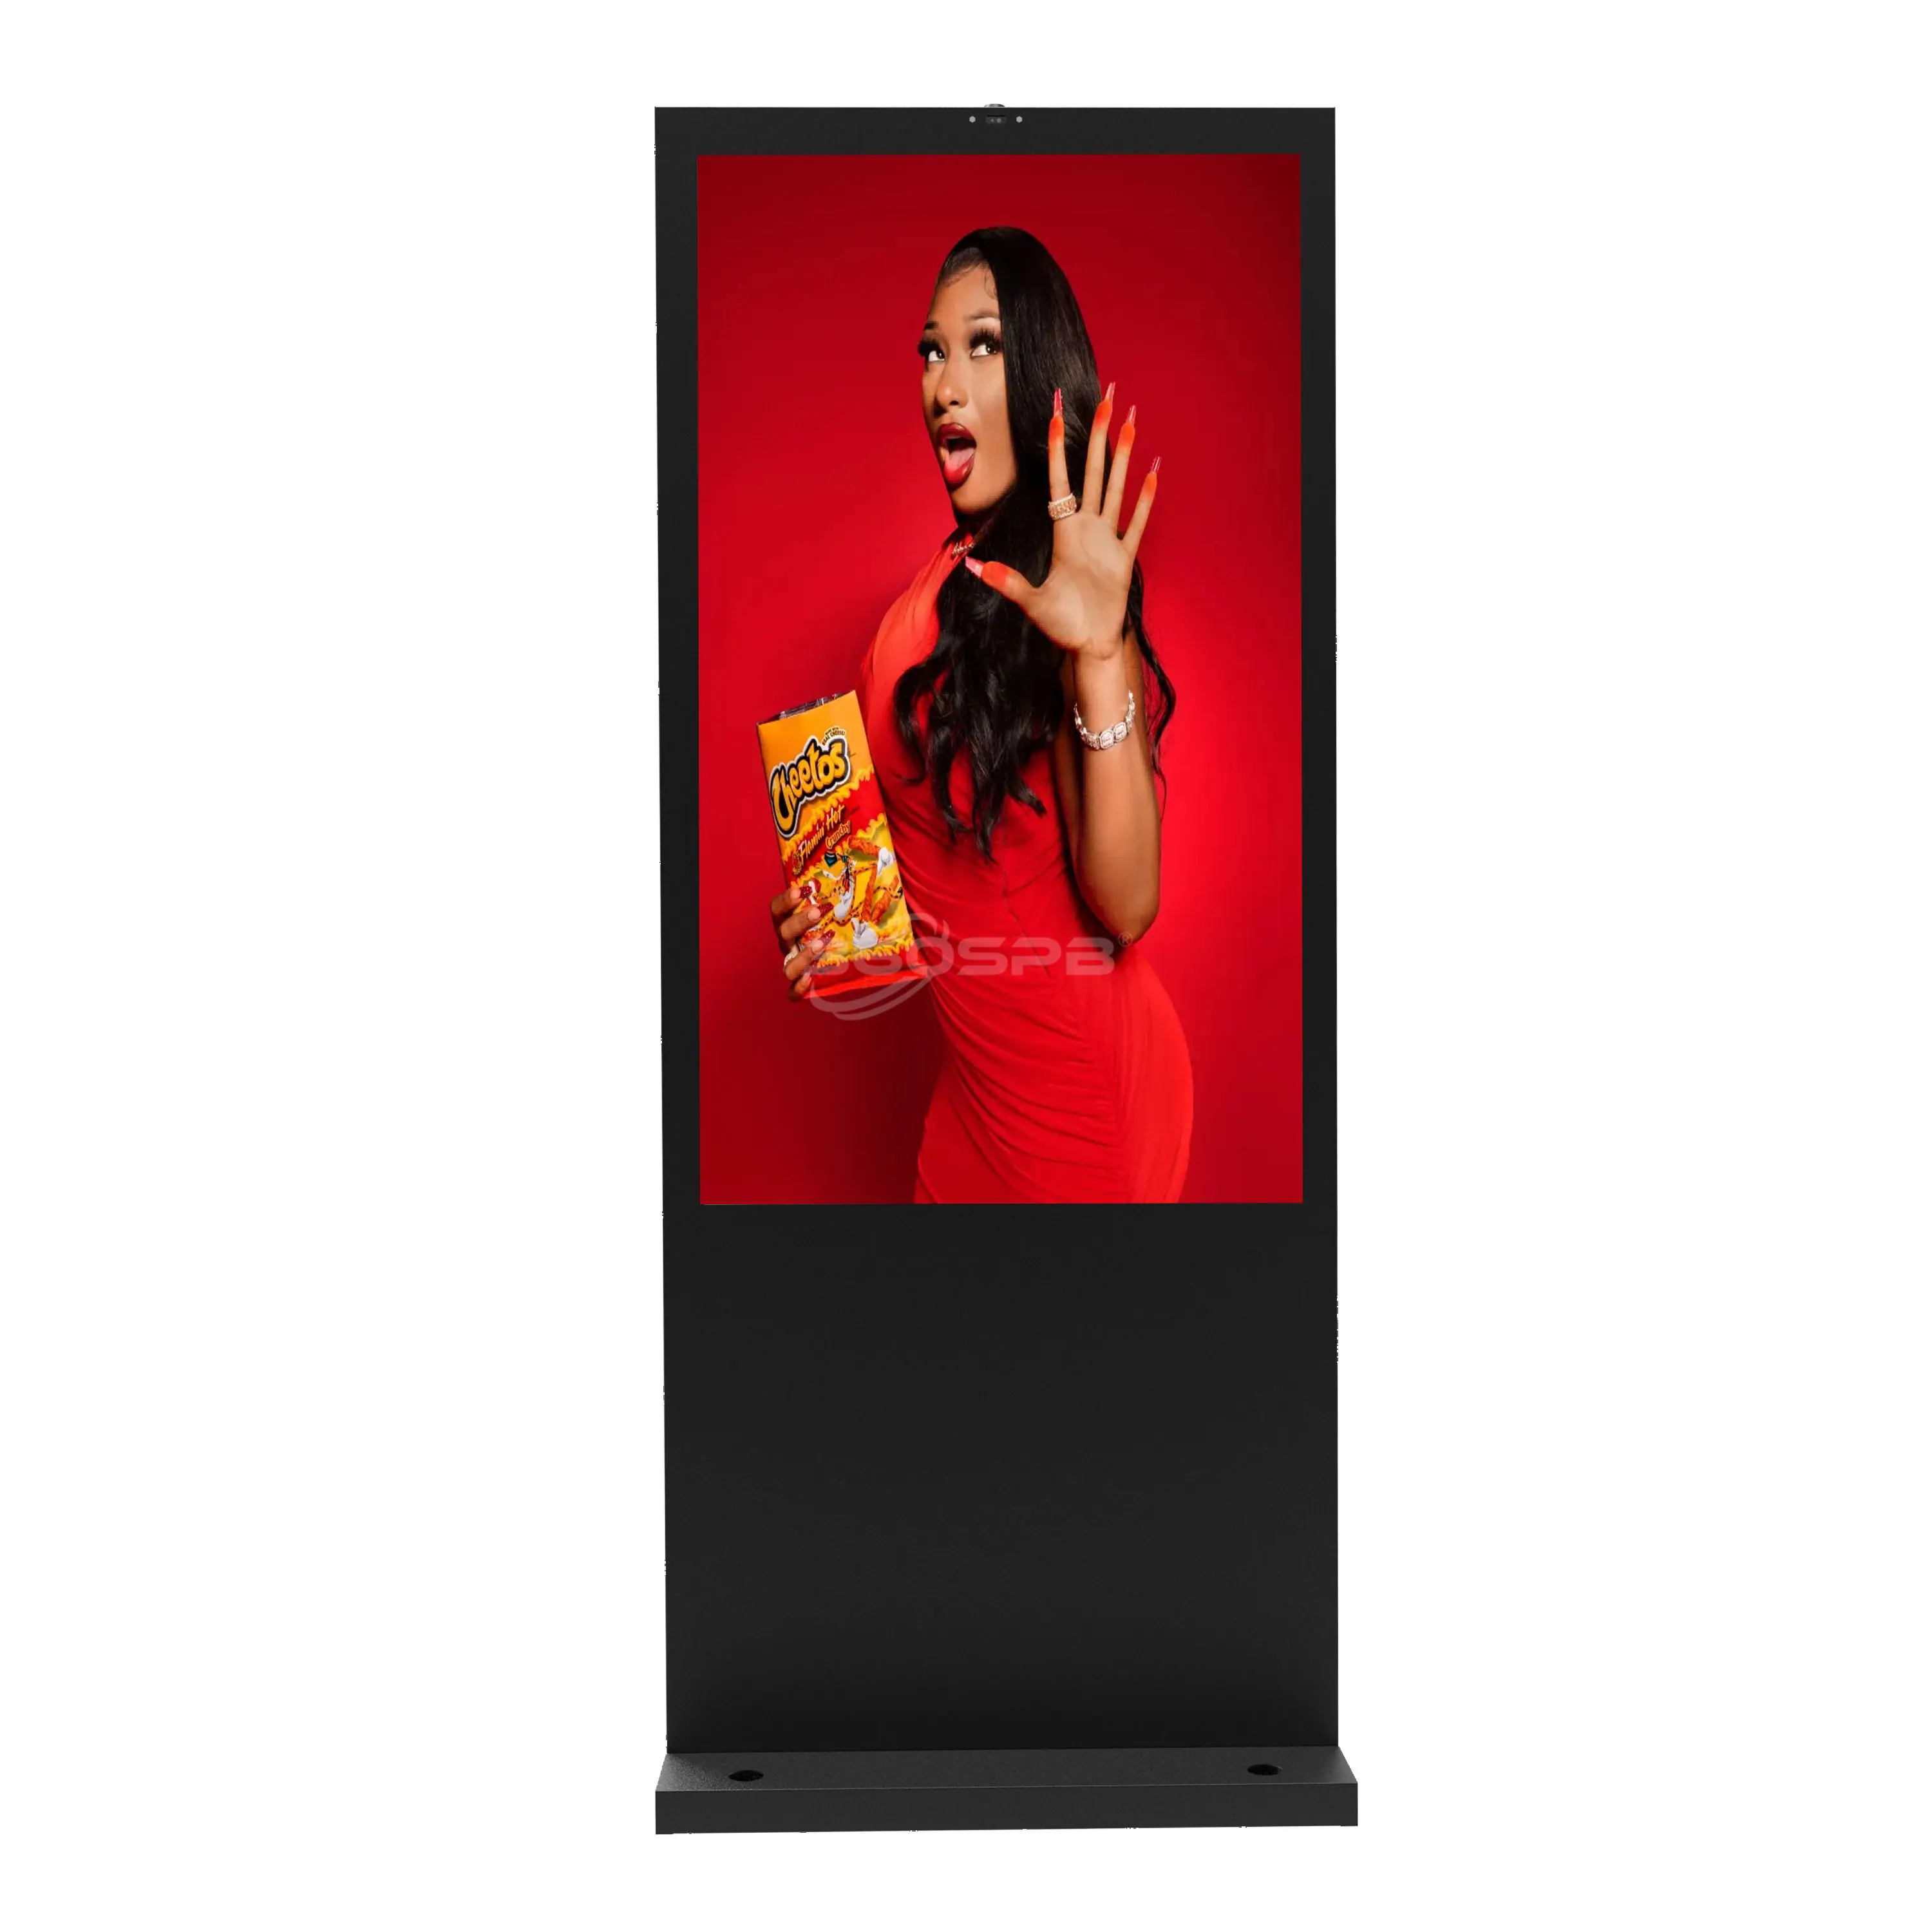 IP65 su geçirmez reklam ekranı elektronik zemin ayakta dijital tabela ile 360SPB OFS75B açık LCD dijital Poster